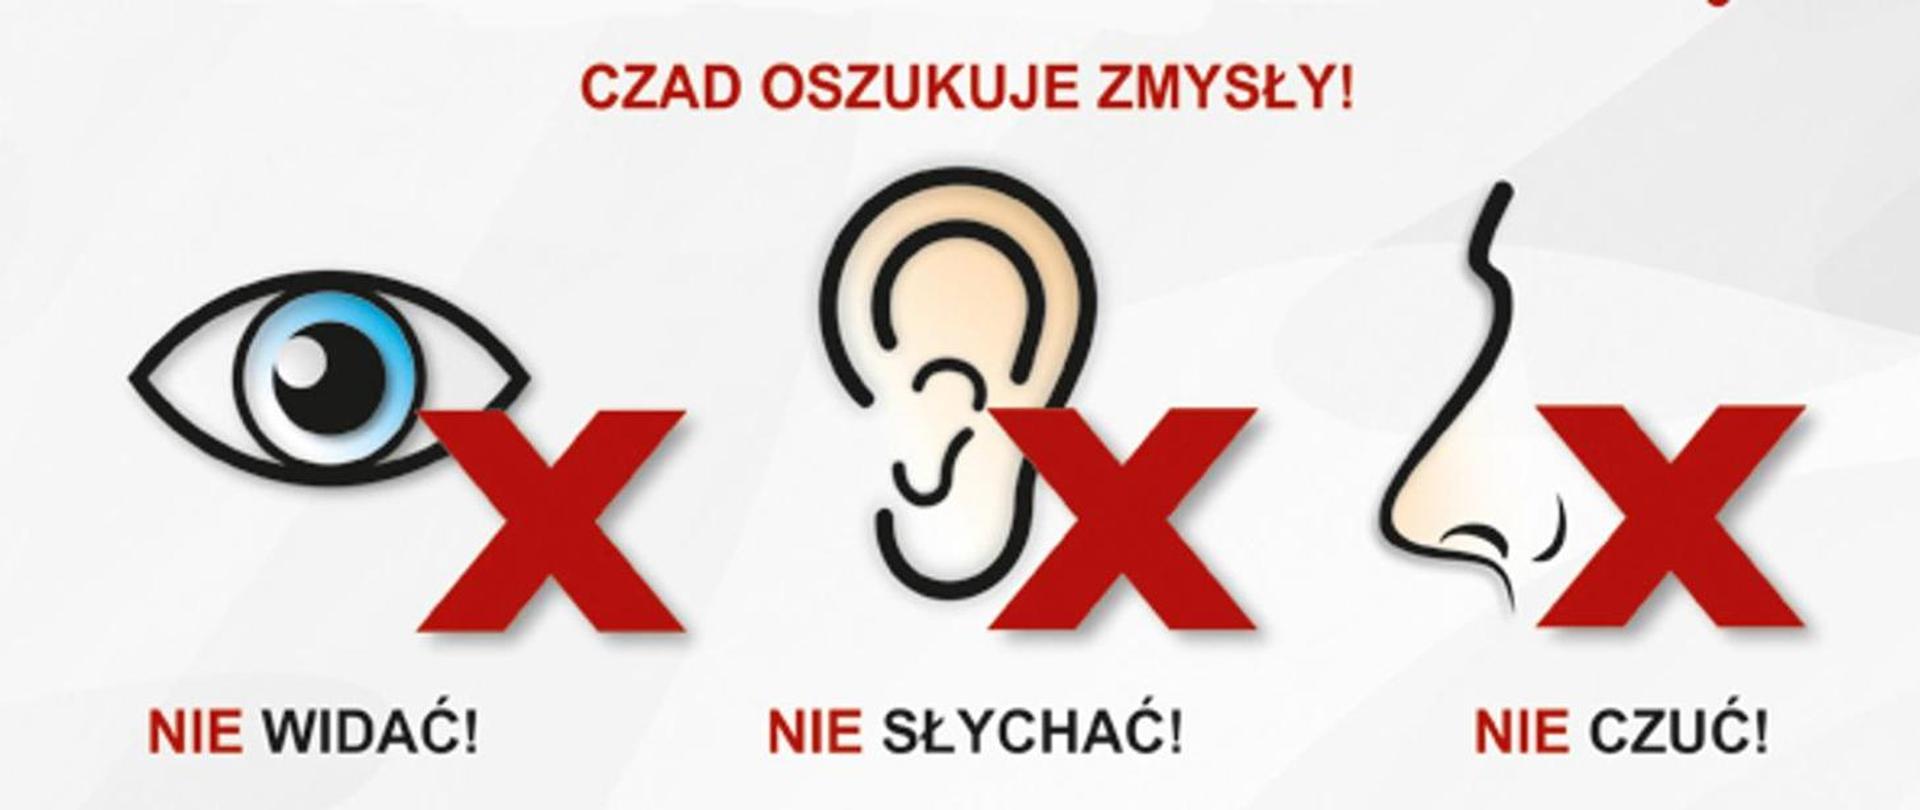 Baner promujący kampanie "Czujka na straży twojego bezpieczeństwa"
Na banerze ikonki oka, ucha i nosa człowieka z przekreśleniem, symbolizujące, że zmysły człowieka nie wyczuwają czadu, czyli tlenku węgla.
